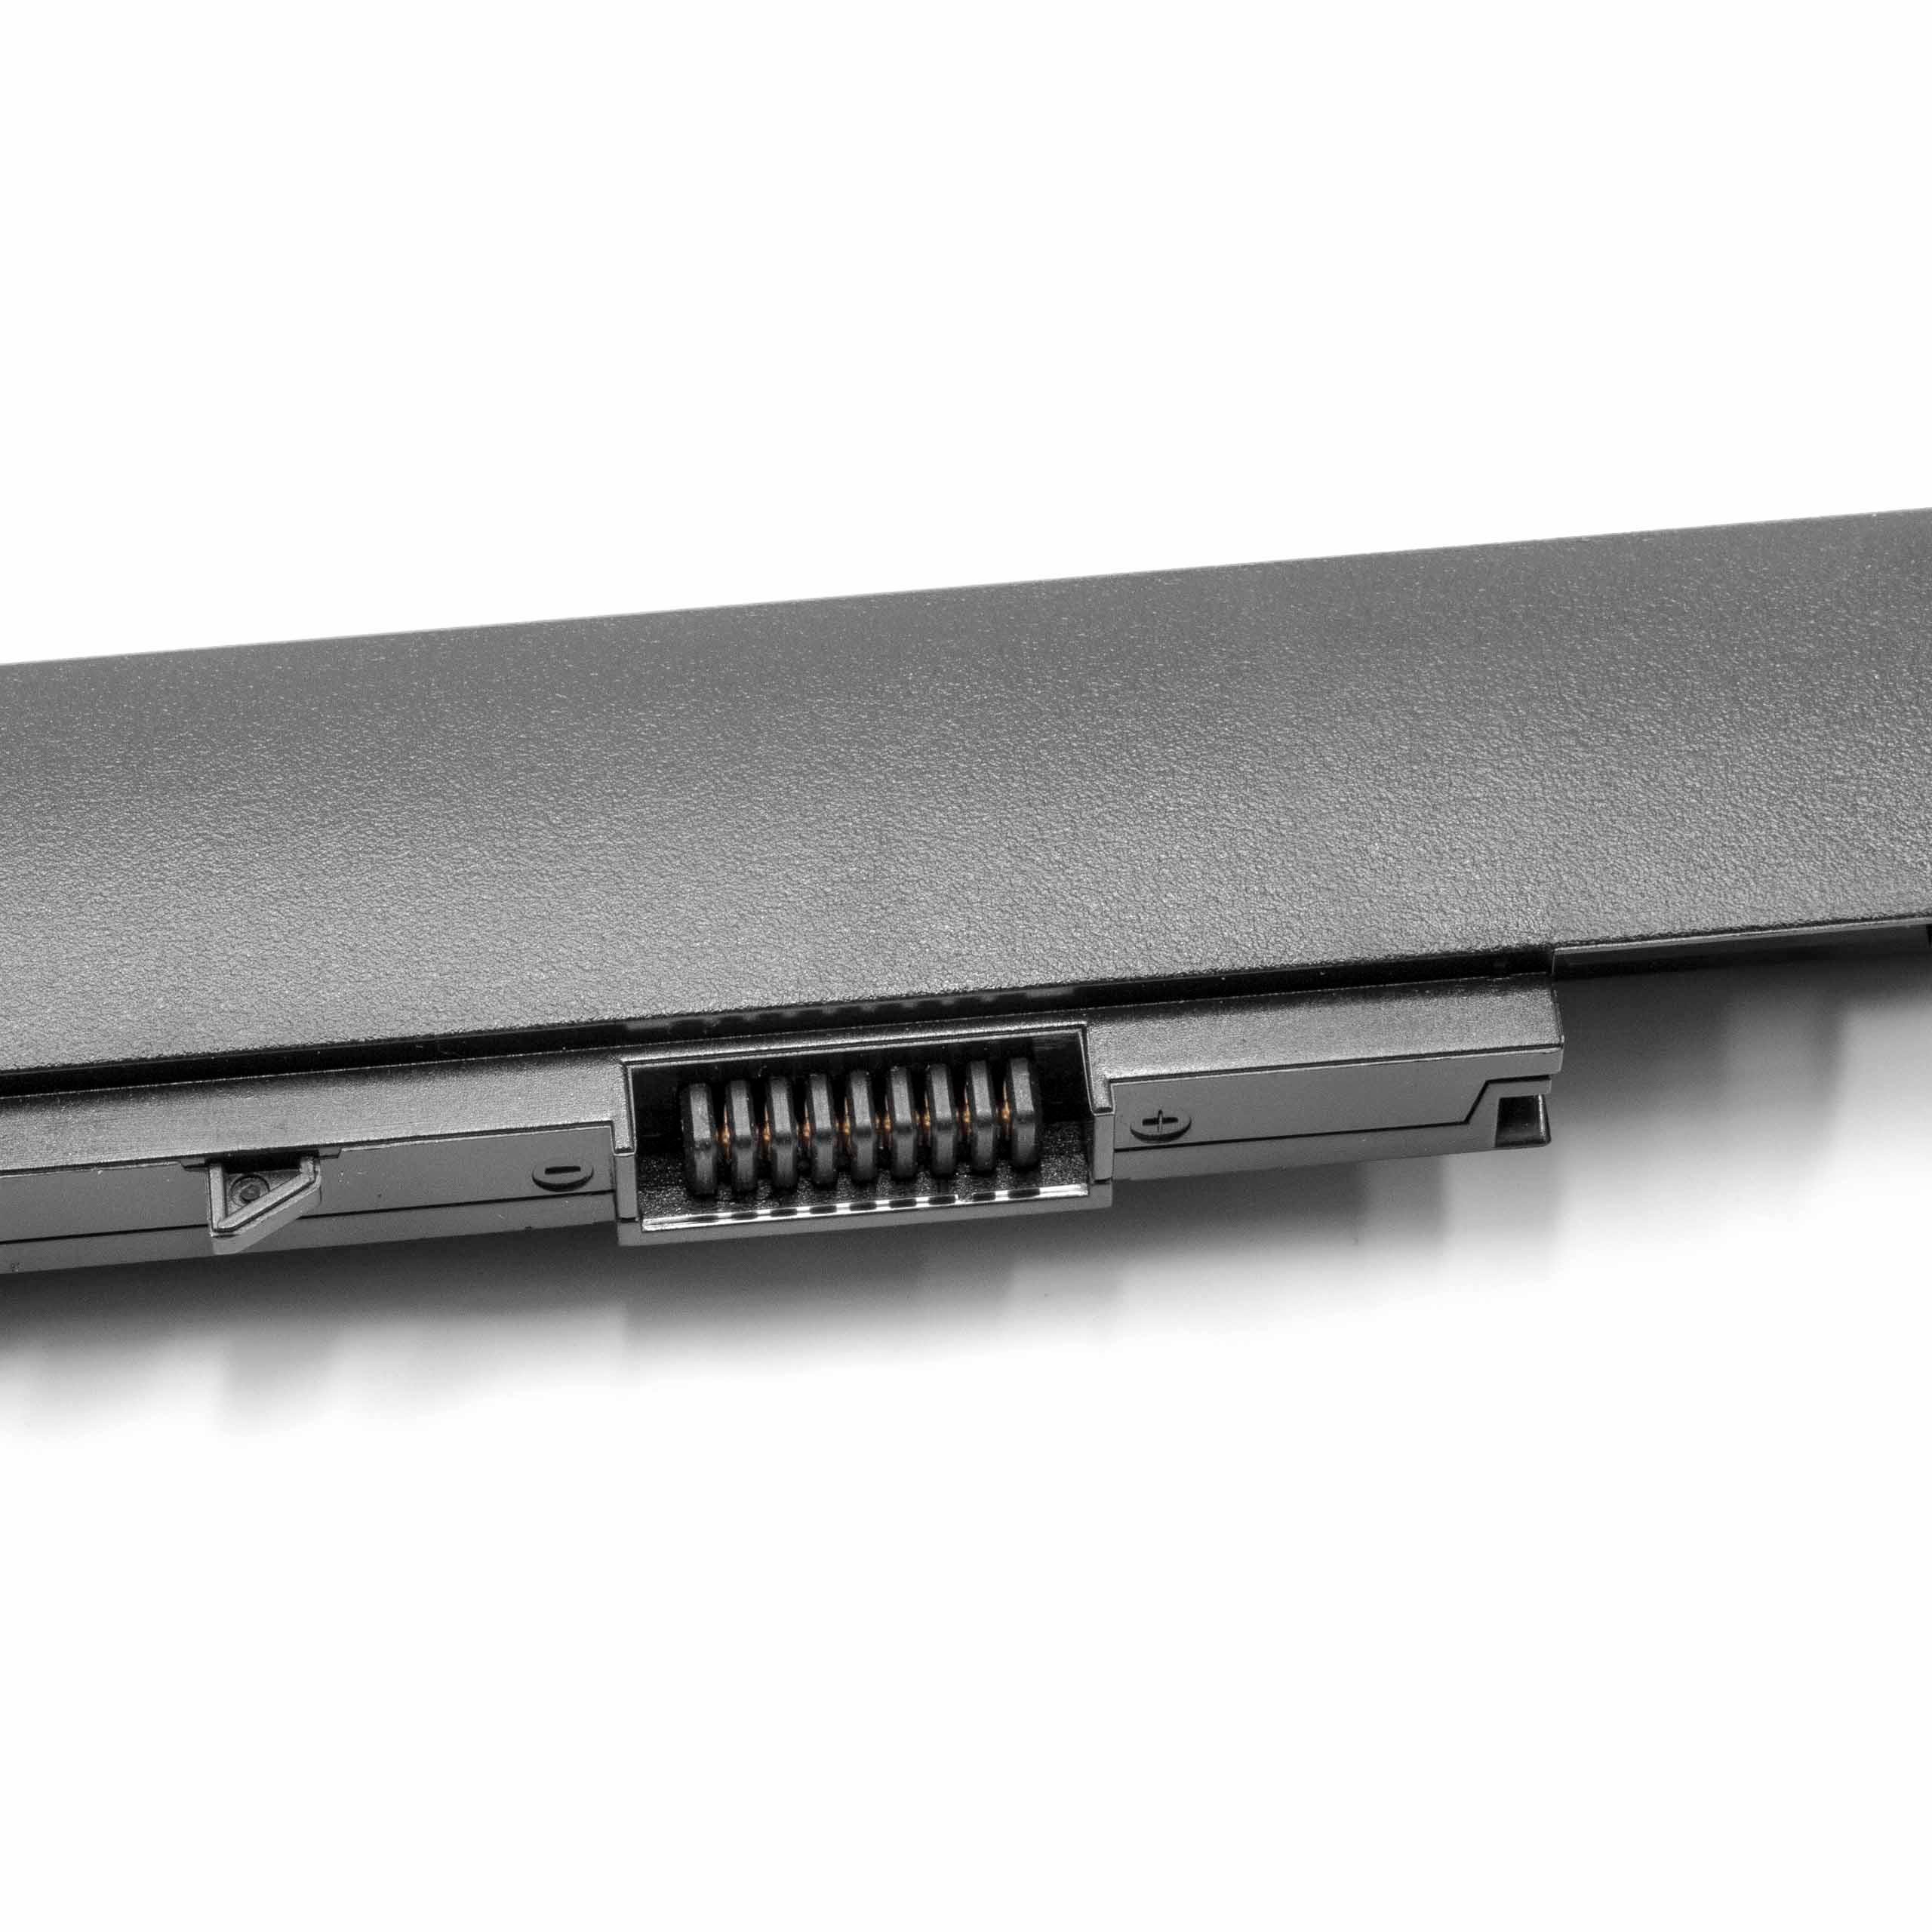 Batterie remplace HP 807611-141, 807611-421, 807611-131 pour ordinateur portable - 2600mAh 14,8V Li-ion, noir